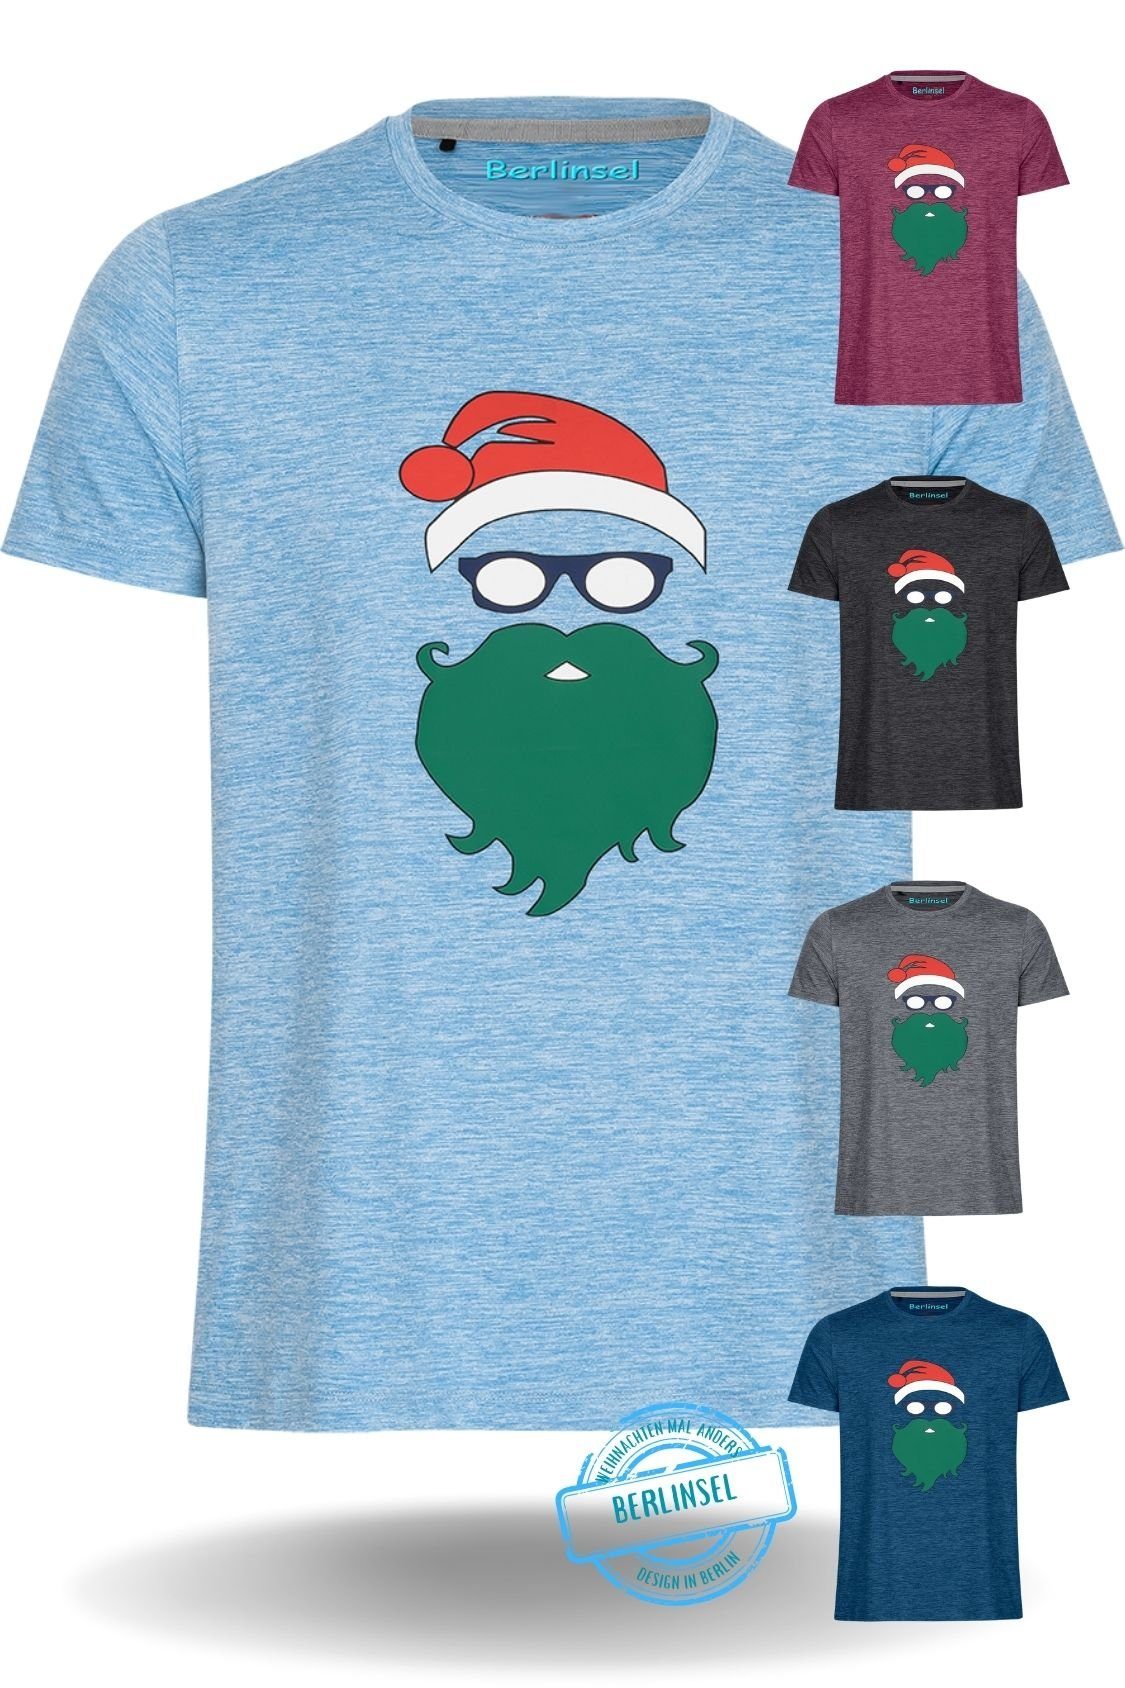 Herren Printshirt Weihnachtsshirt Weihnachtsfeier, Berlinsel Weihnachtsoutfit Weihnachtsgeschenk, Weihnachtsfoto hellblau Männer T-Shirt